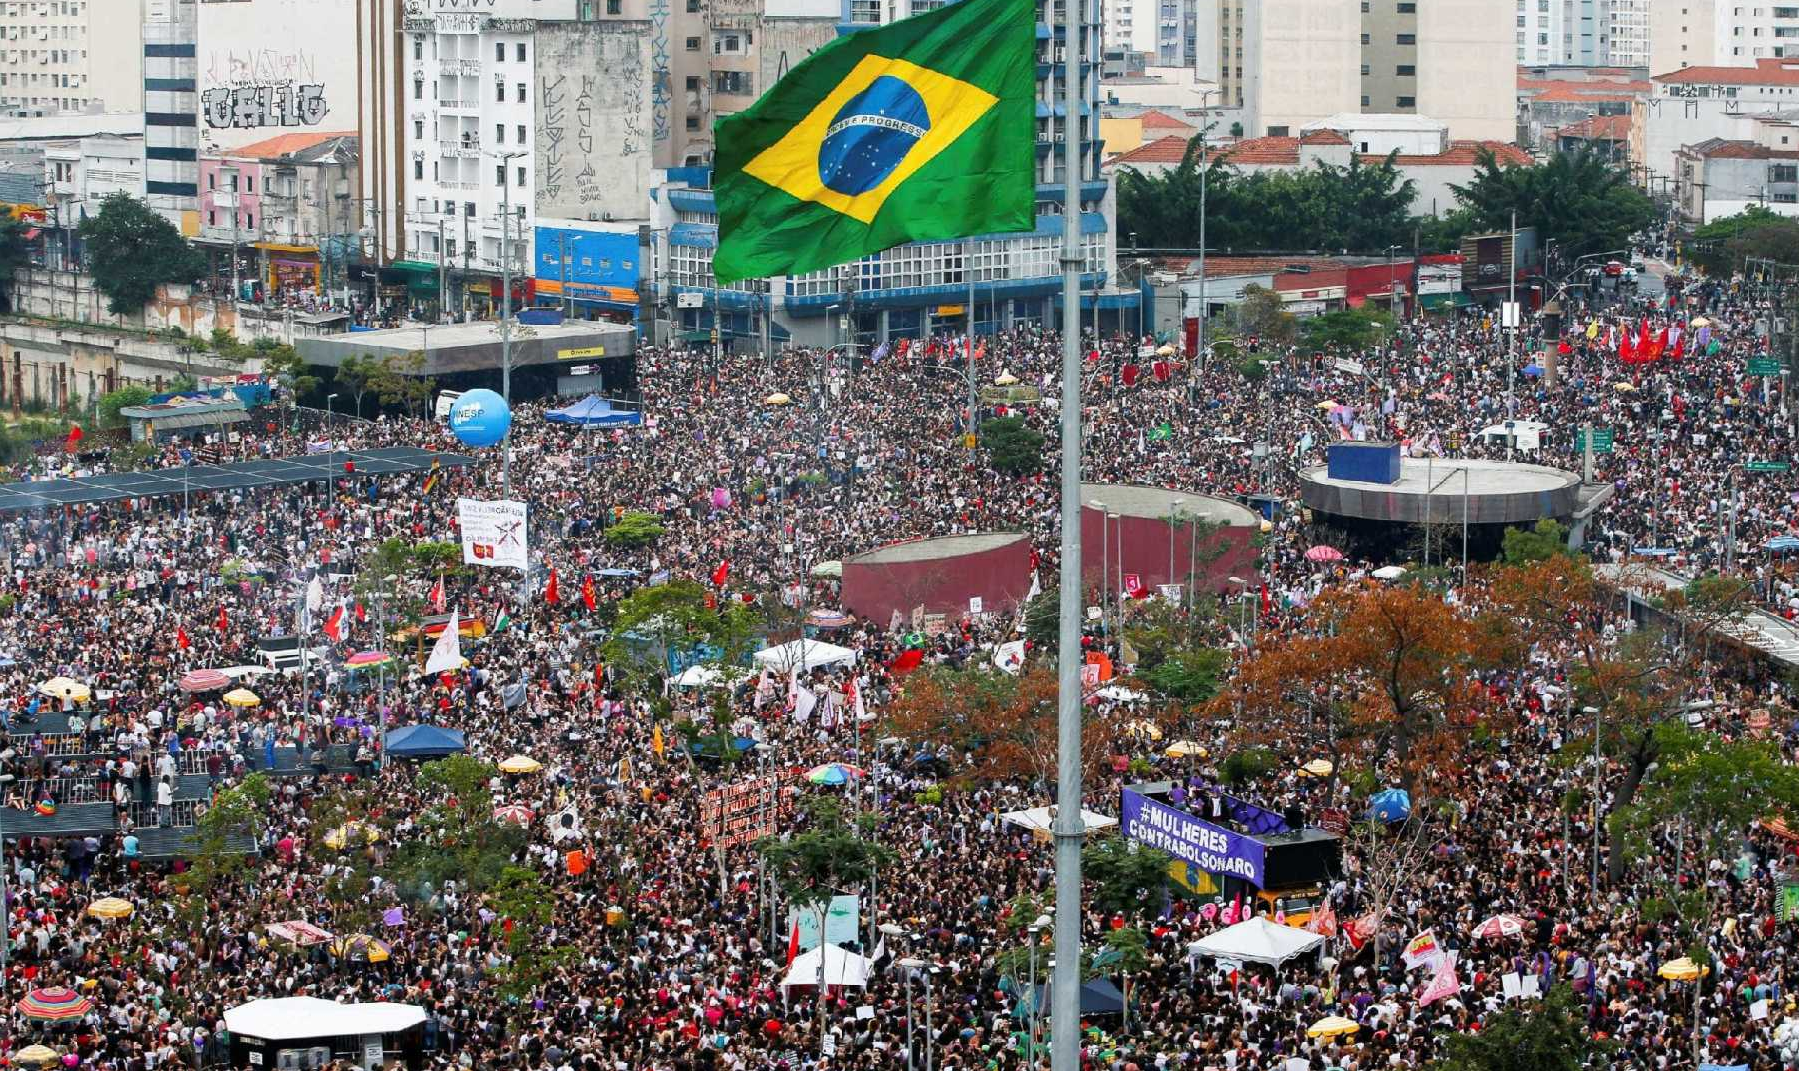 Conclamamos as brasileiras e brasileiros a refletirem sobre a gravidade deste momento histórico